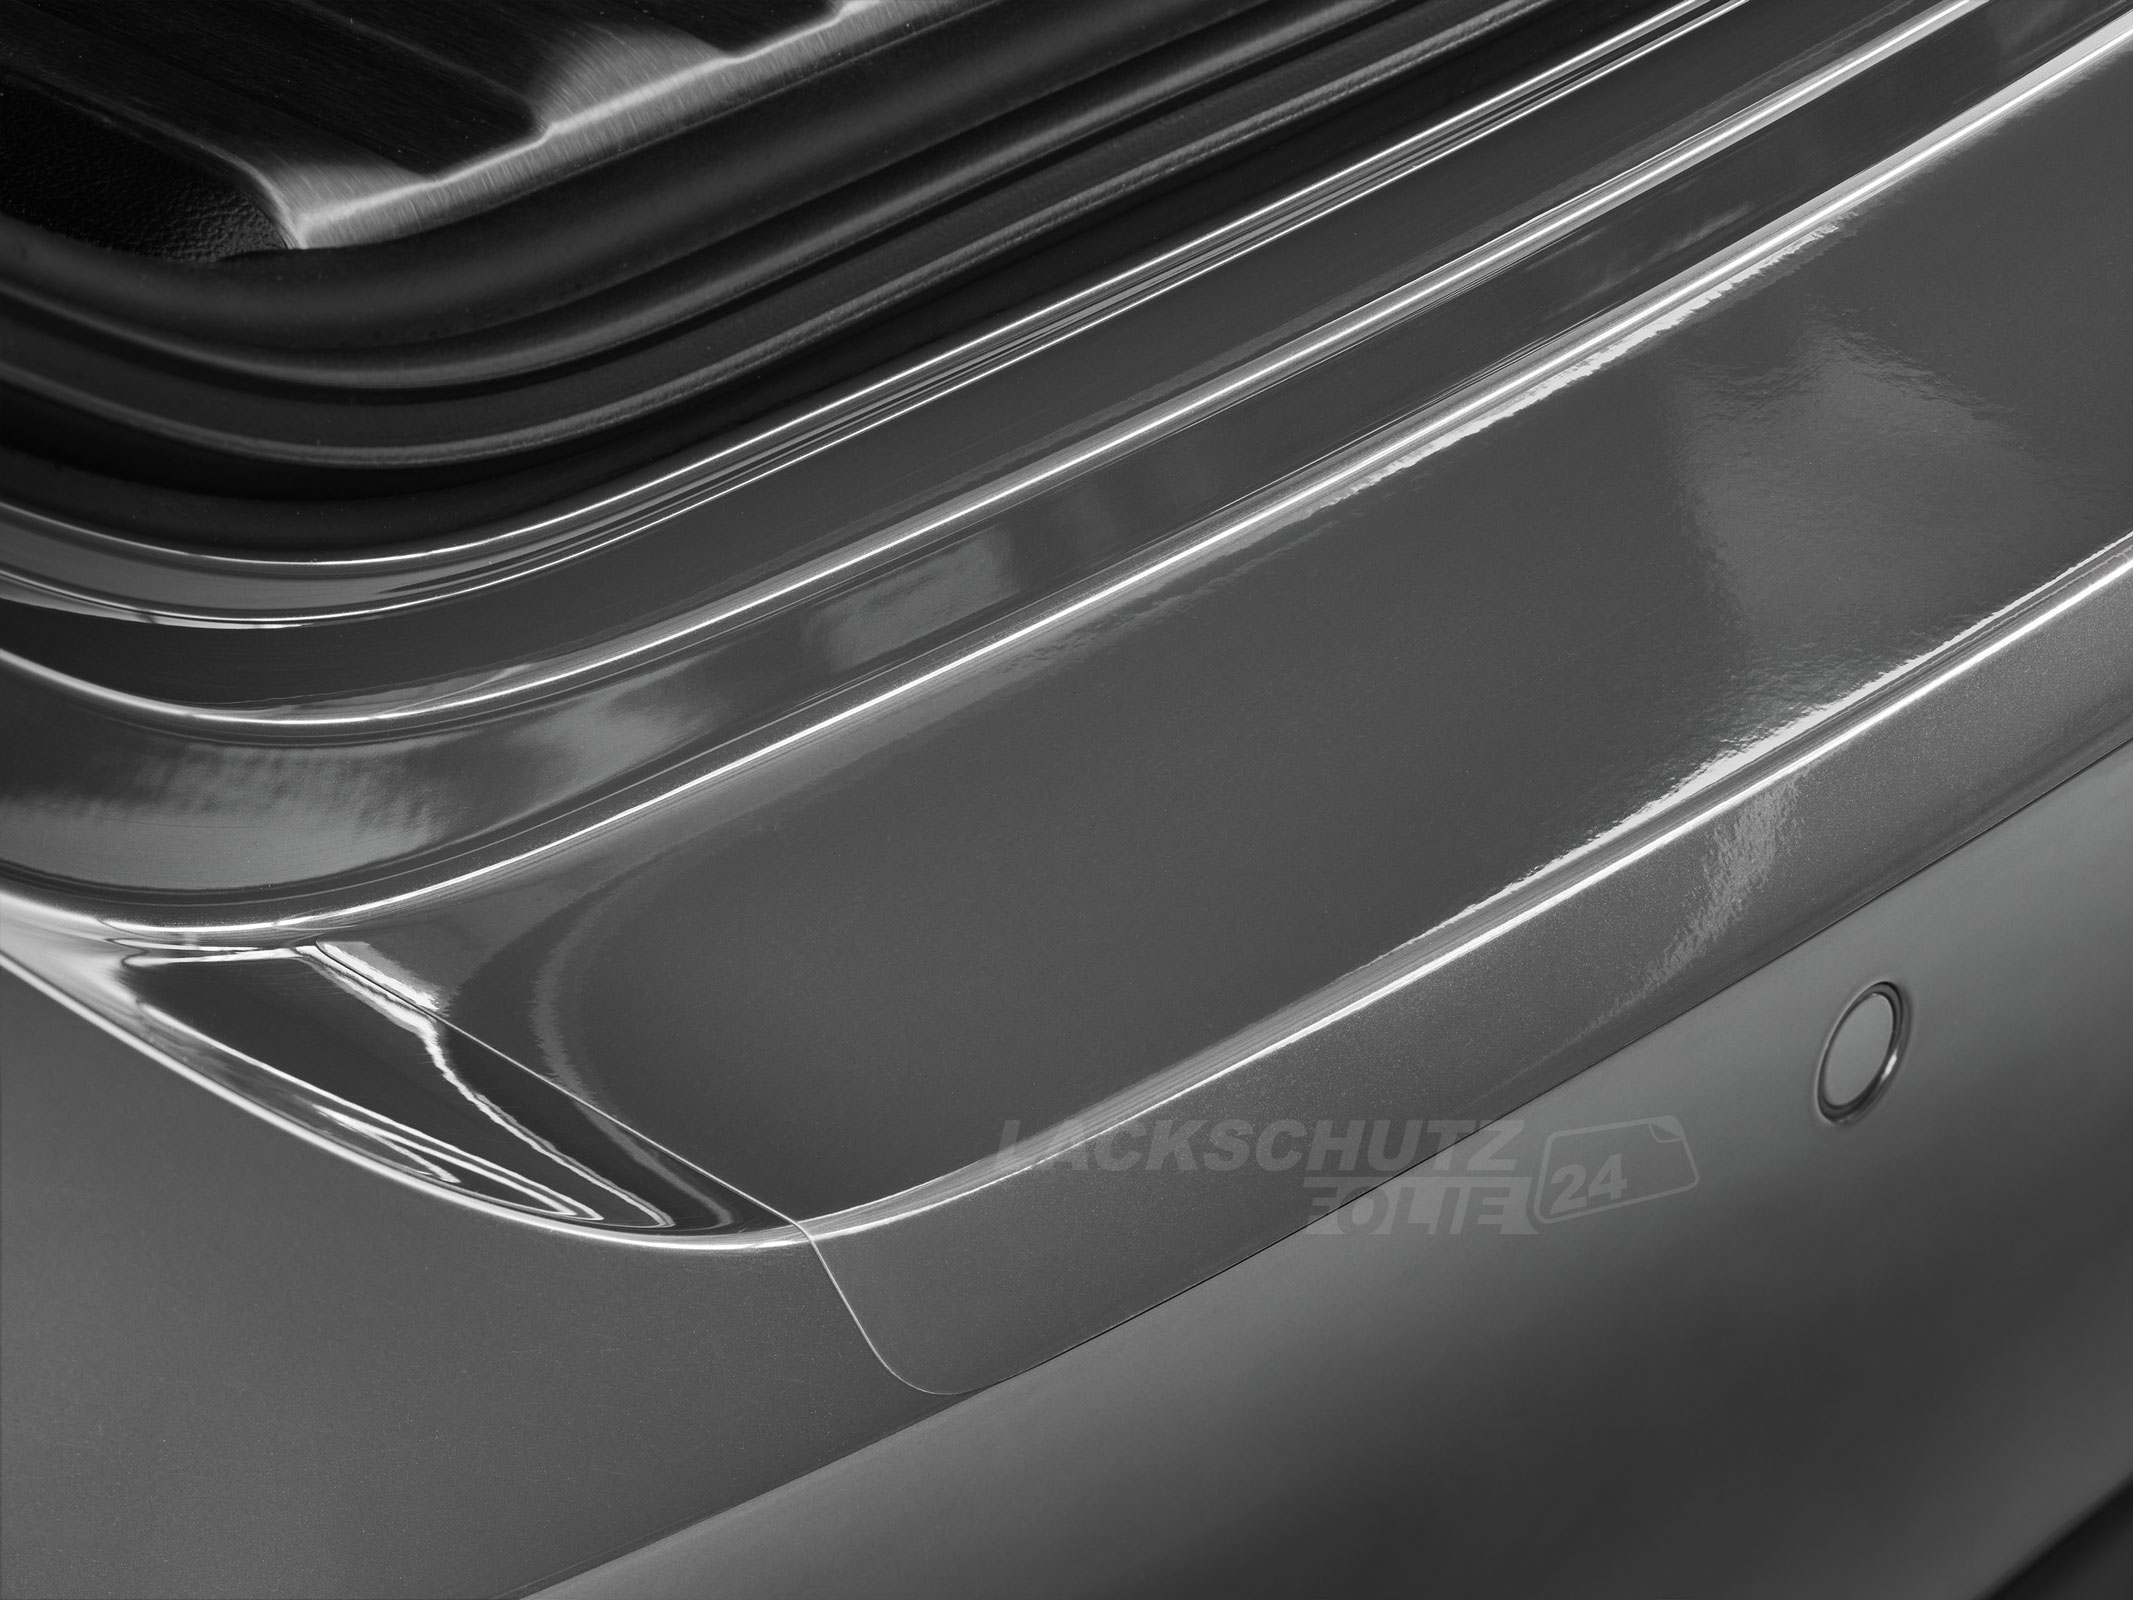 Ladekantenschutzfolie - Transparent Glatt Hochglänzend 150 µm stark für Mazda 6 Sport-Kombi (II) Typ GH, BJ 04/2008-2012